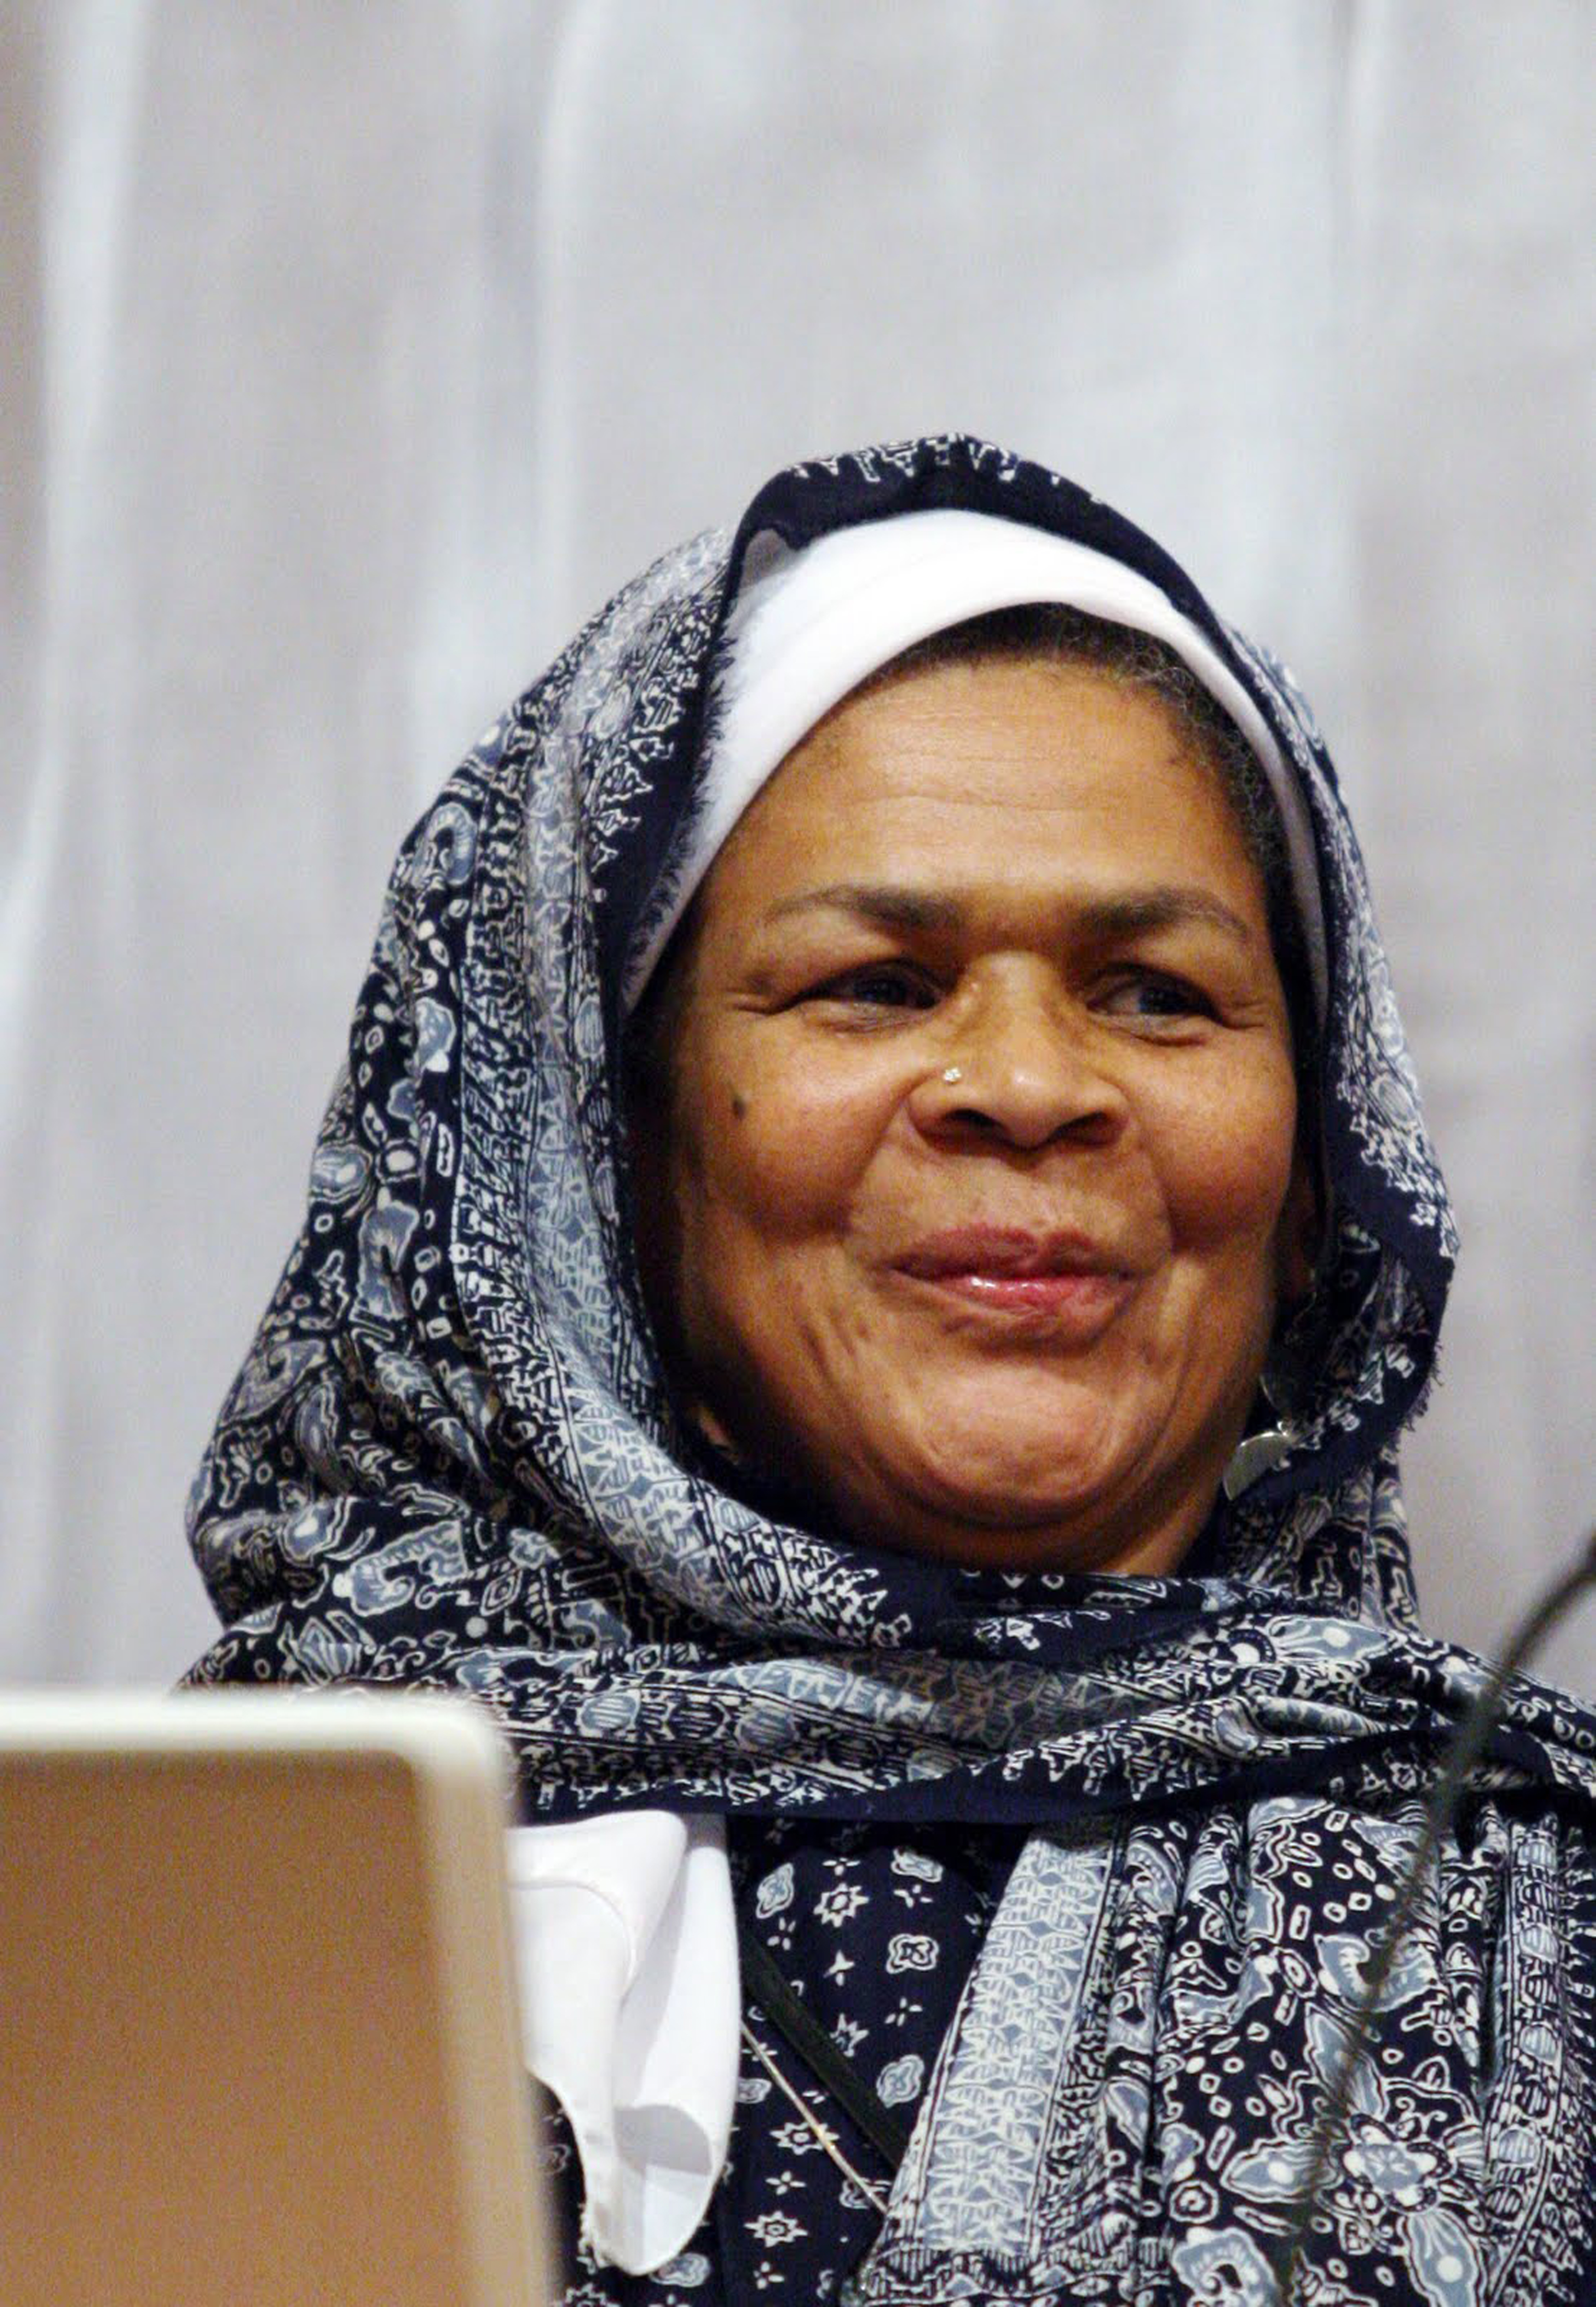 Intervento di Amina Wadud alla conferenza “Islam, Justice, and Gender Reform” alla Oregon State University.